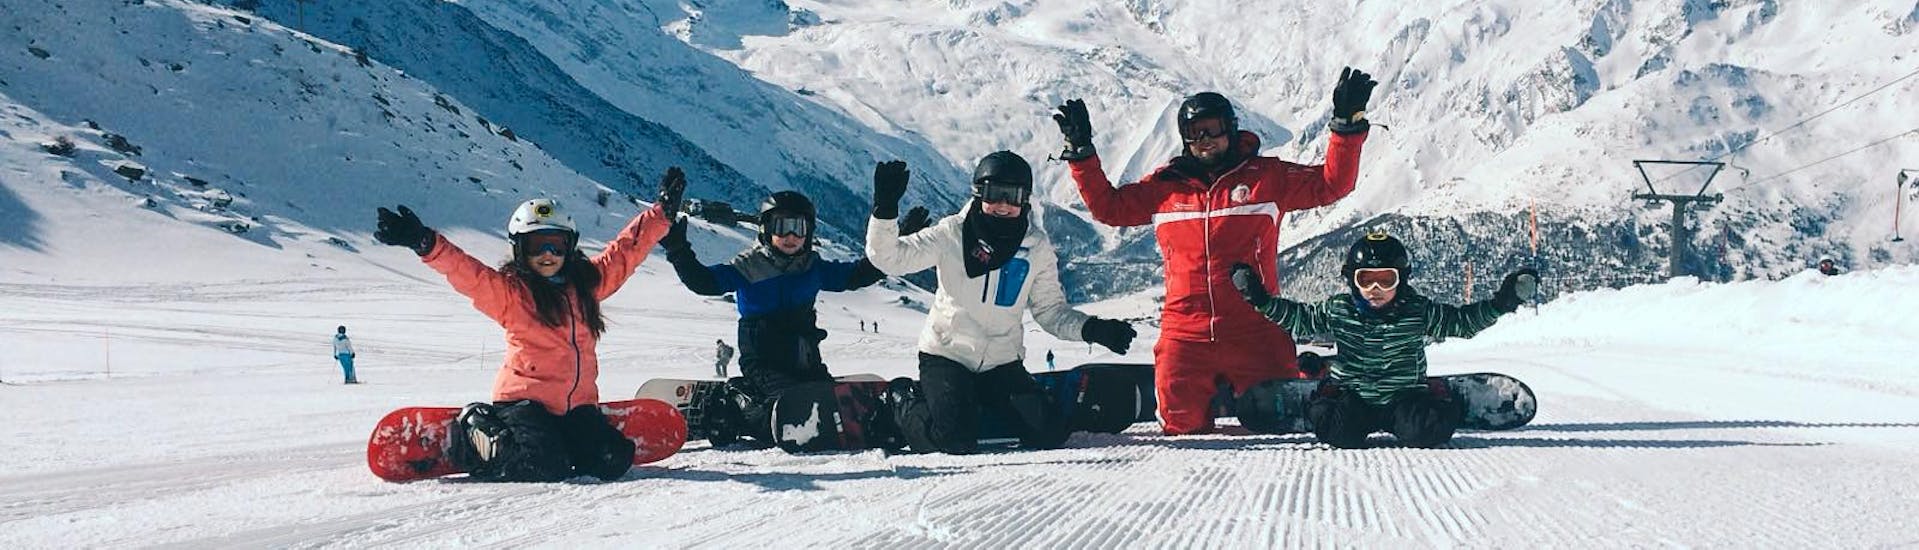 Quatre snowboarders et un moniteur s'encouragent lors des cours de snowboard pour enfants (6-12 ans) pour débutants de l'école de ski suisse de Saas-Grund.